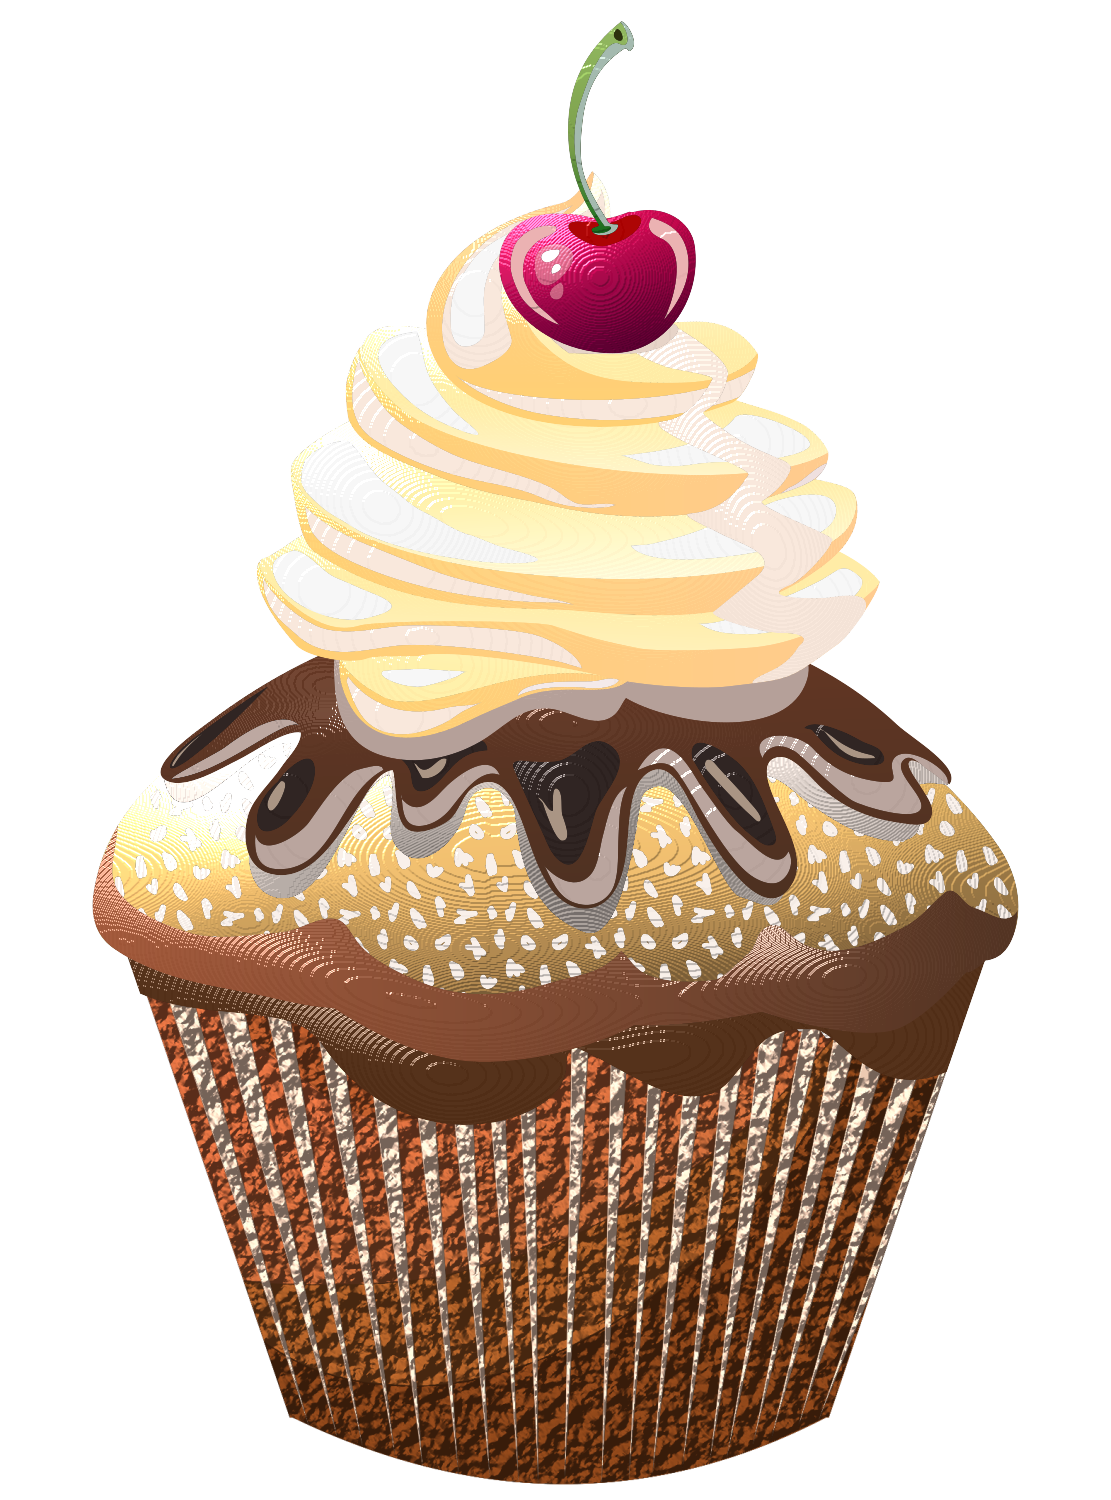  cupcake cupcakes pinterest. Desert clipart sponge cake